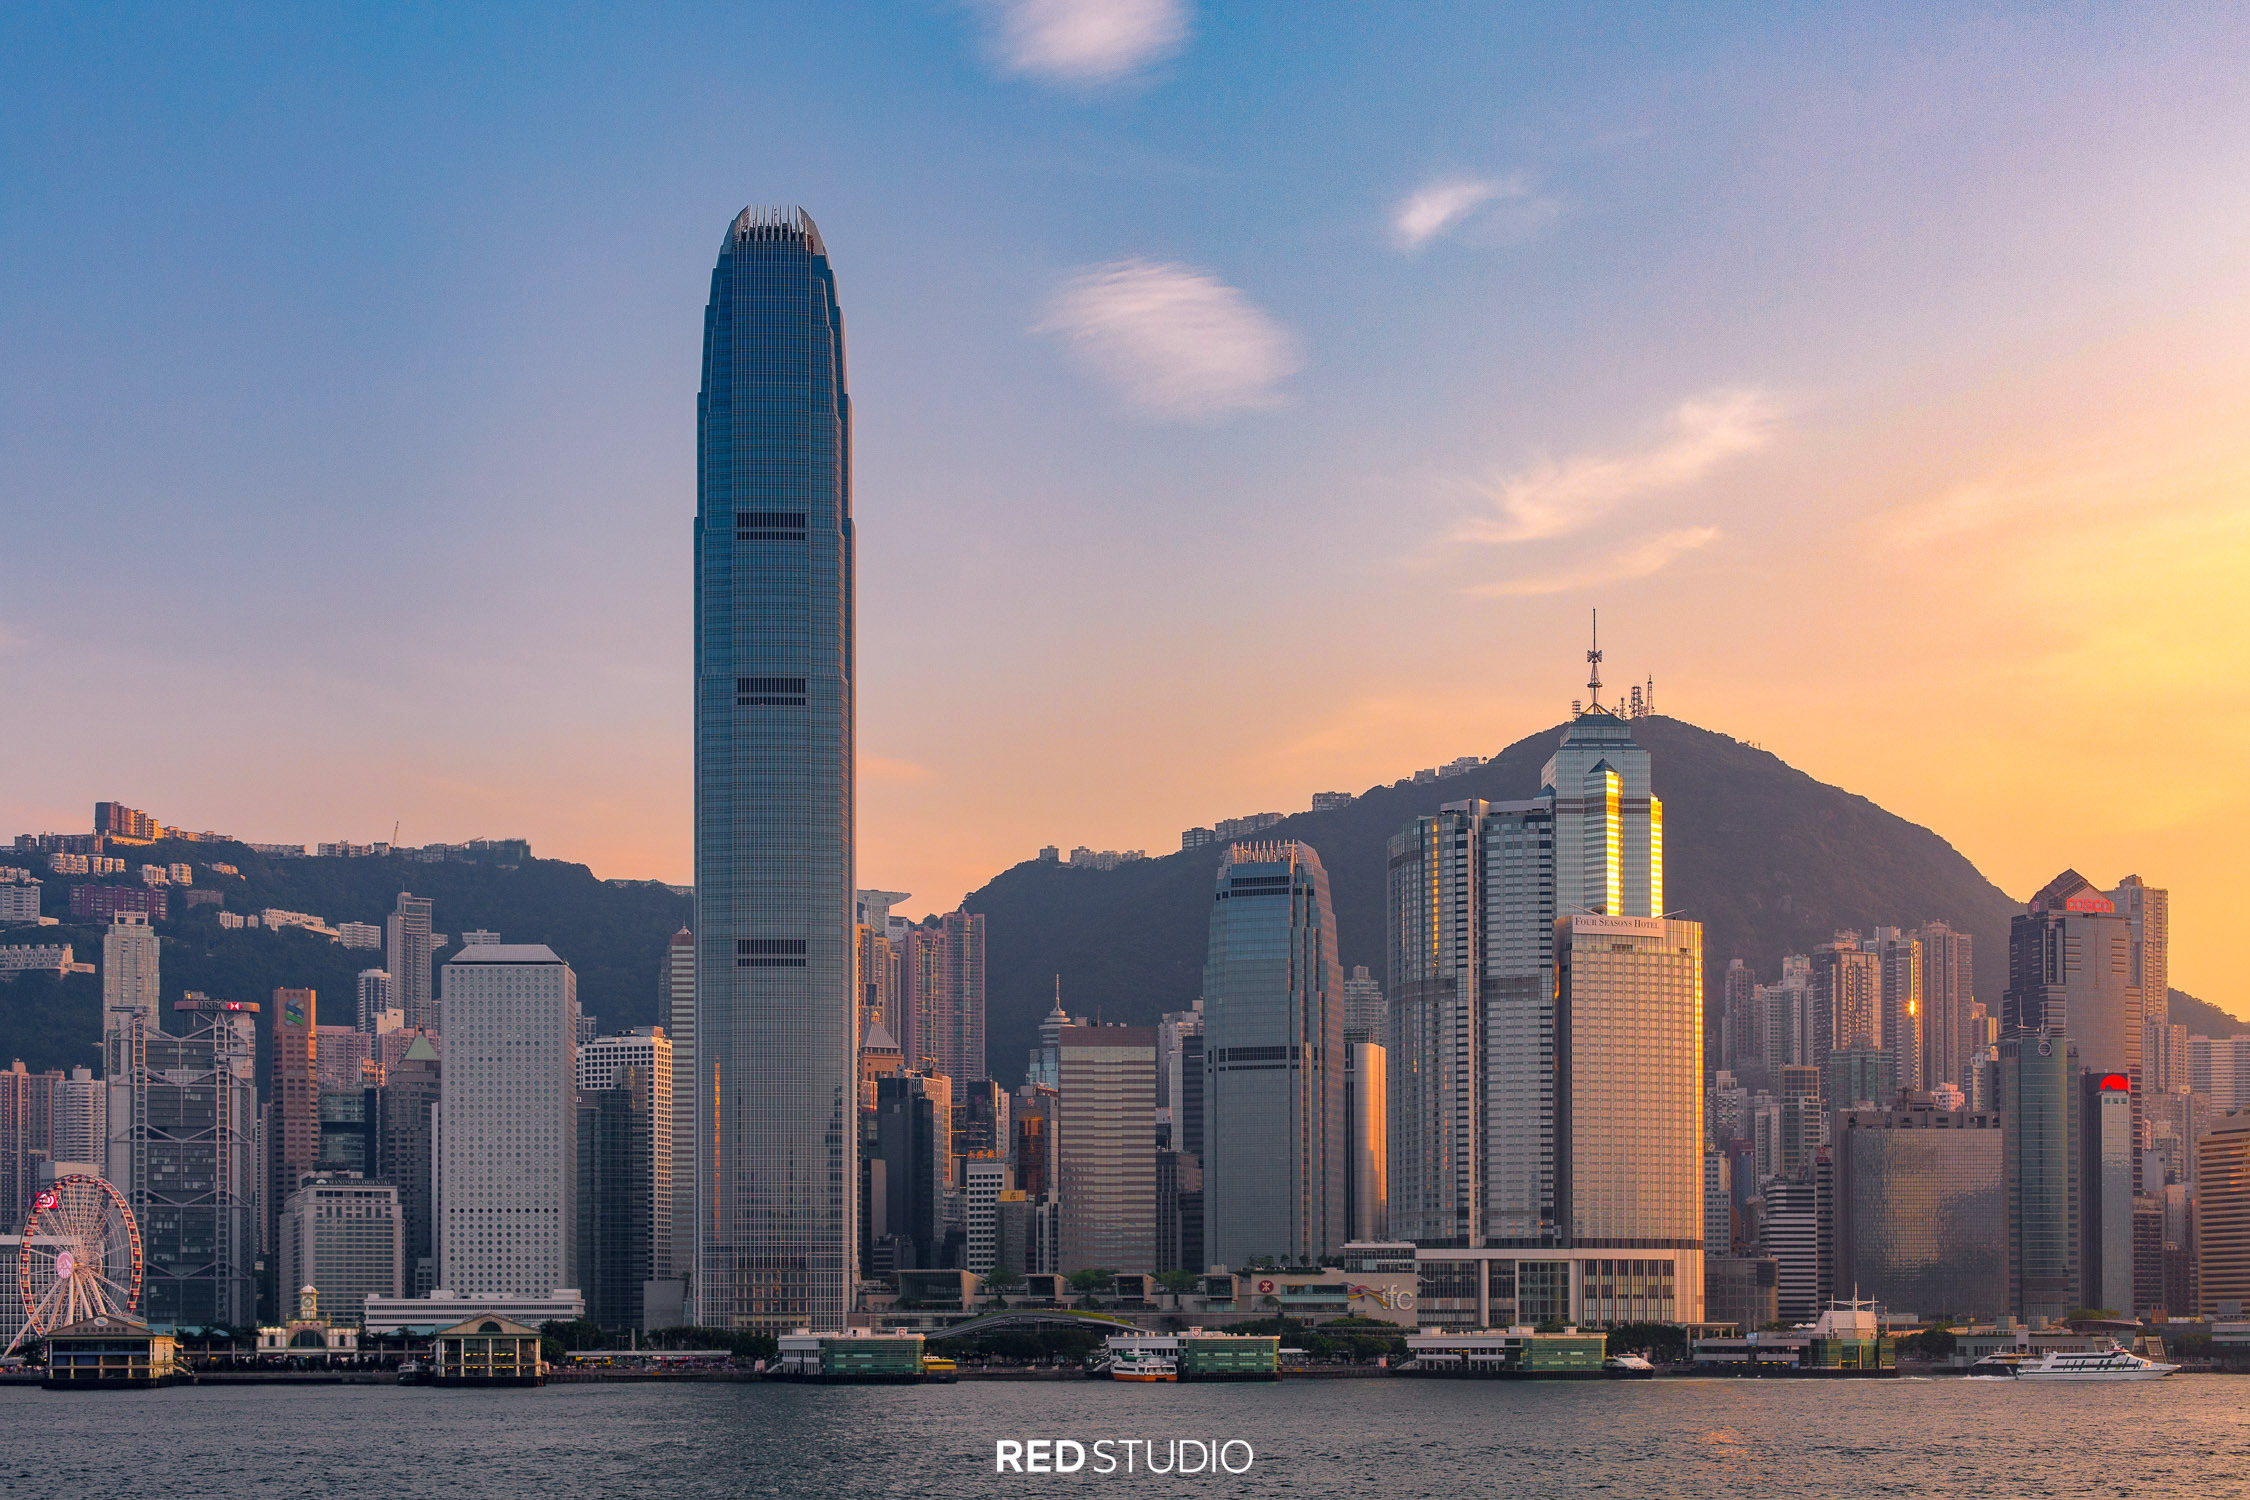 不能不去！盘点香港十大必去旅游景点～买了机票的你一定要收藏哟！ | DurianShare.com